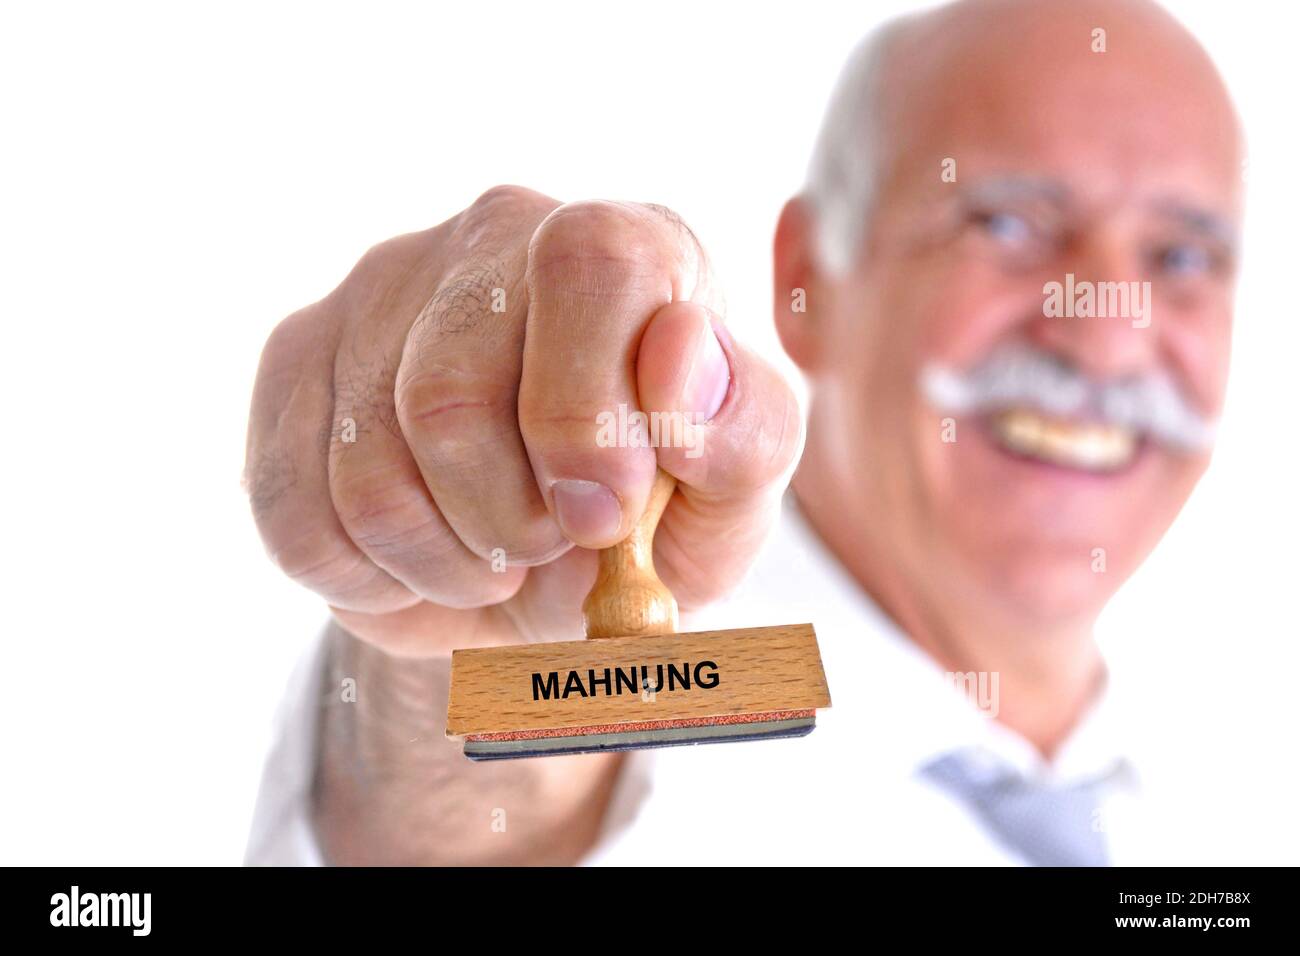 65, 70, Jahre, Mann hält Stempel in der Hand, Aufschrift: Mahnung, Stock Photo